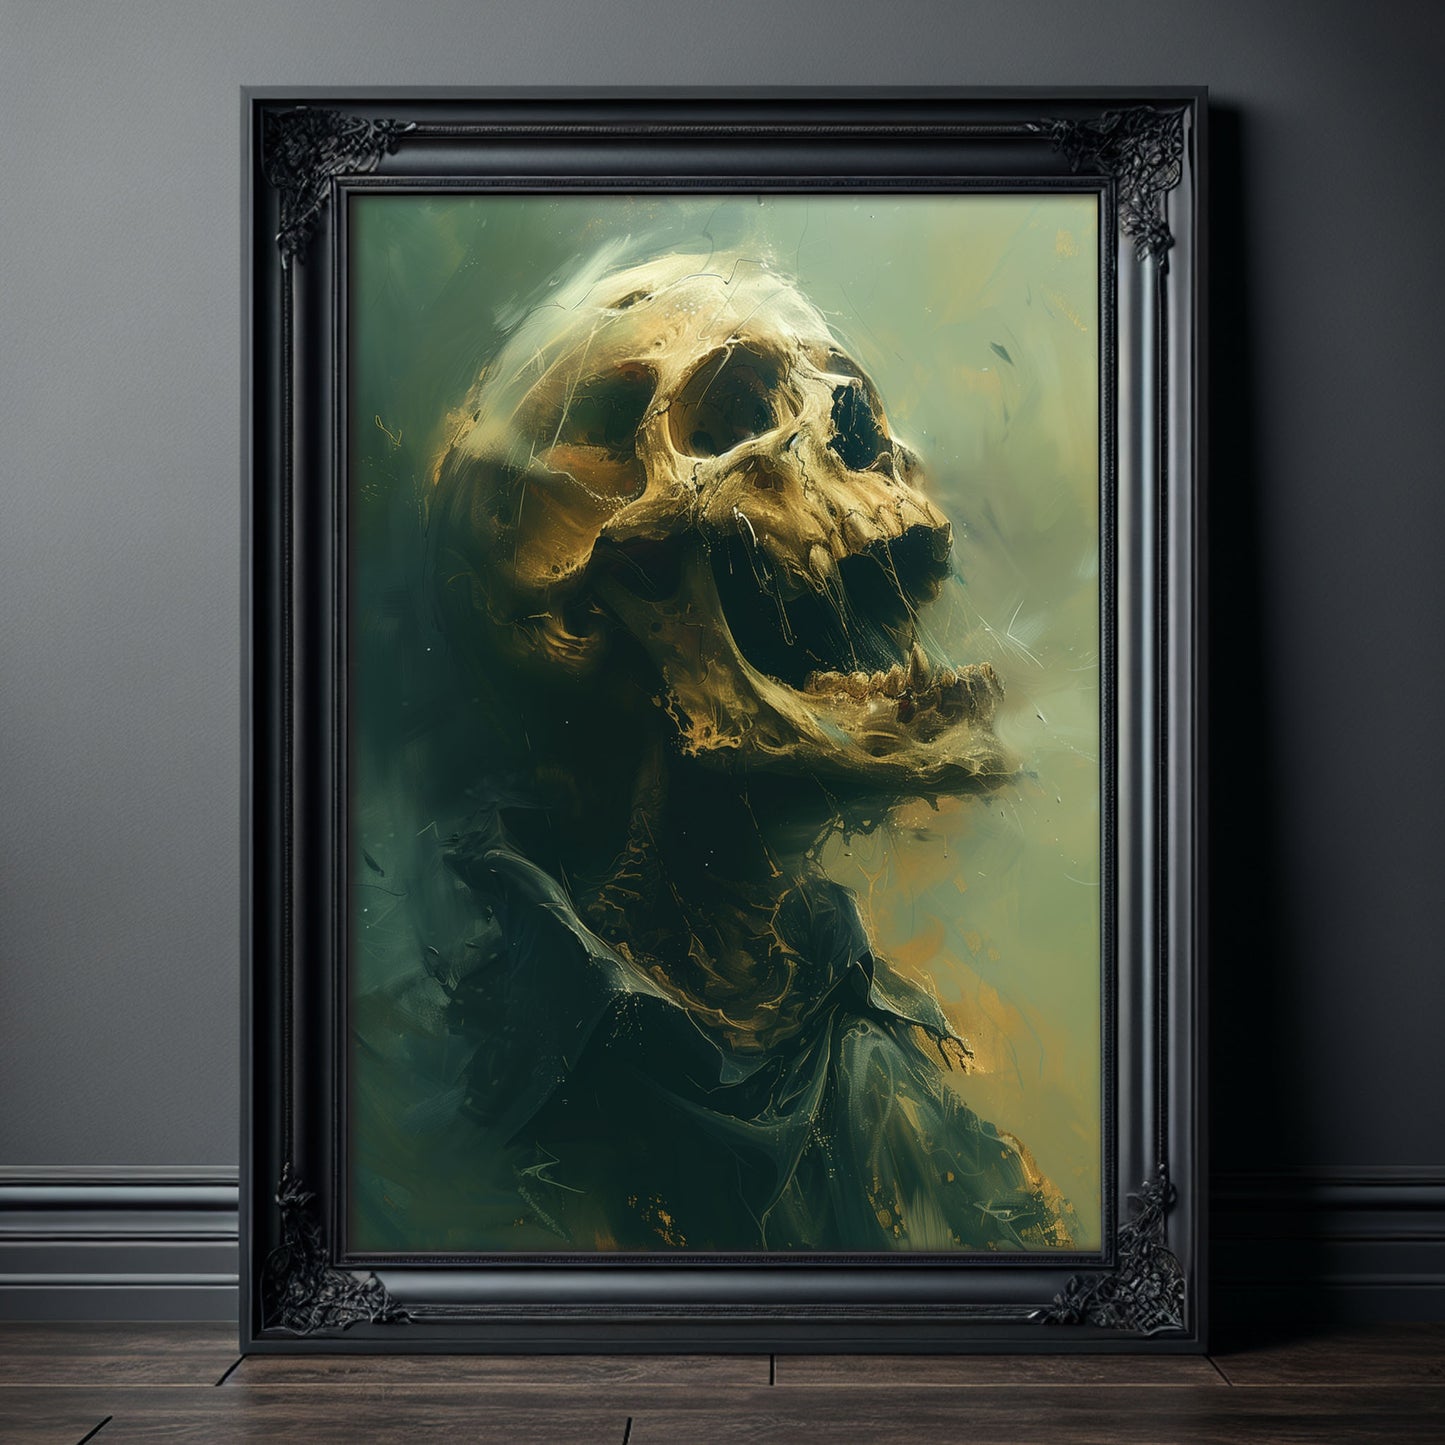 Haunting Screaming Skull Painting - Creepy Eerie Wall Art